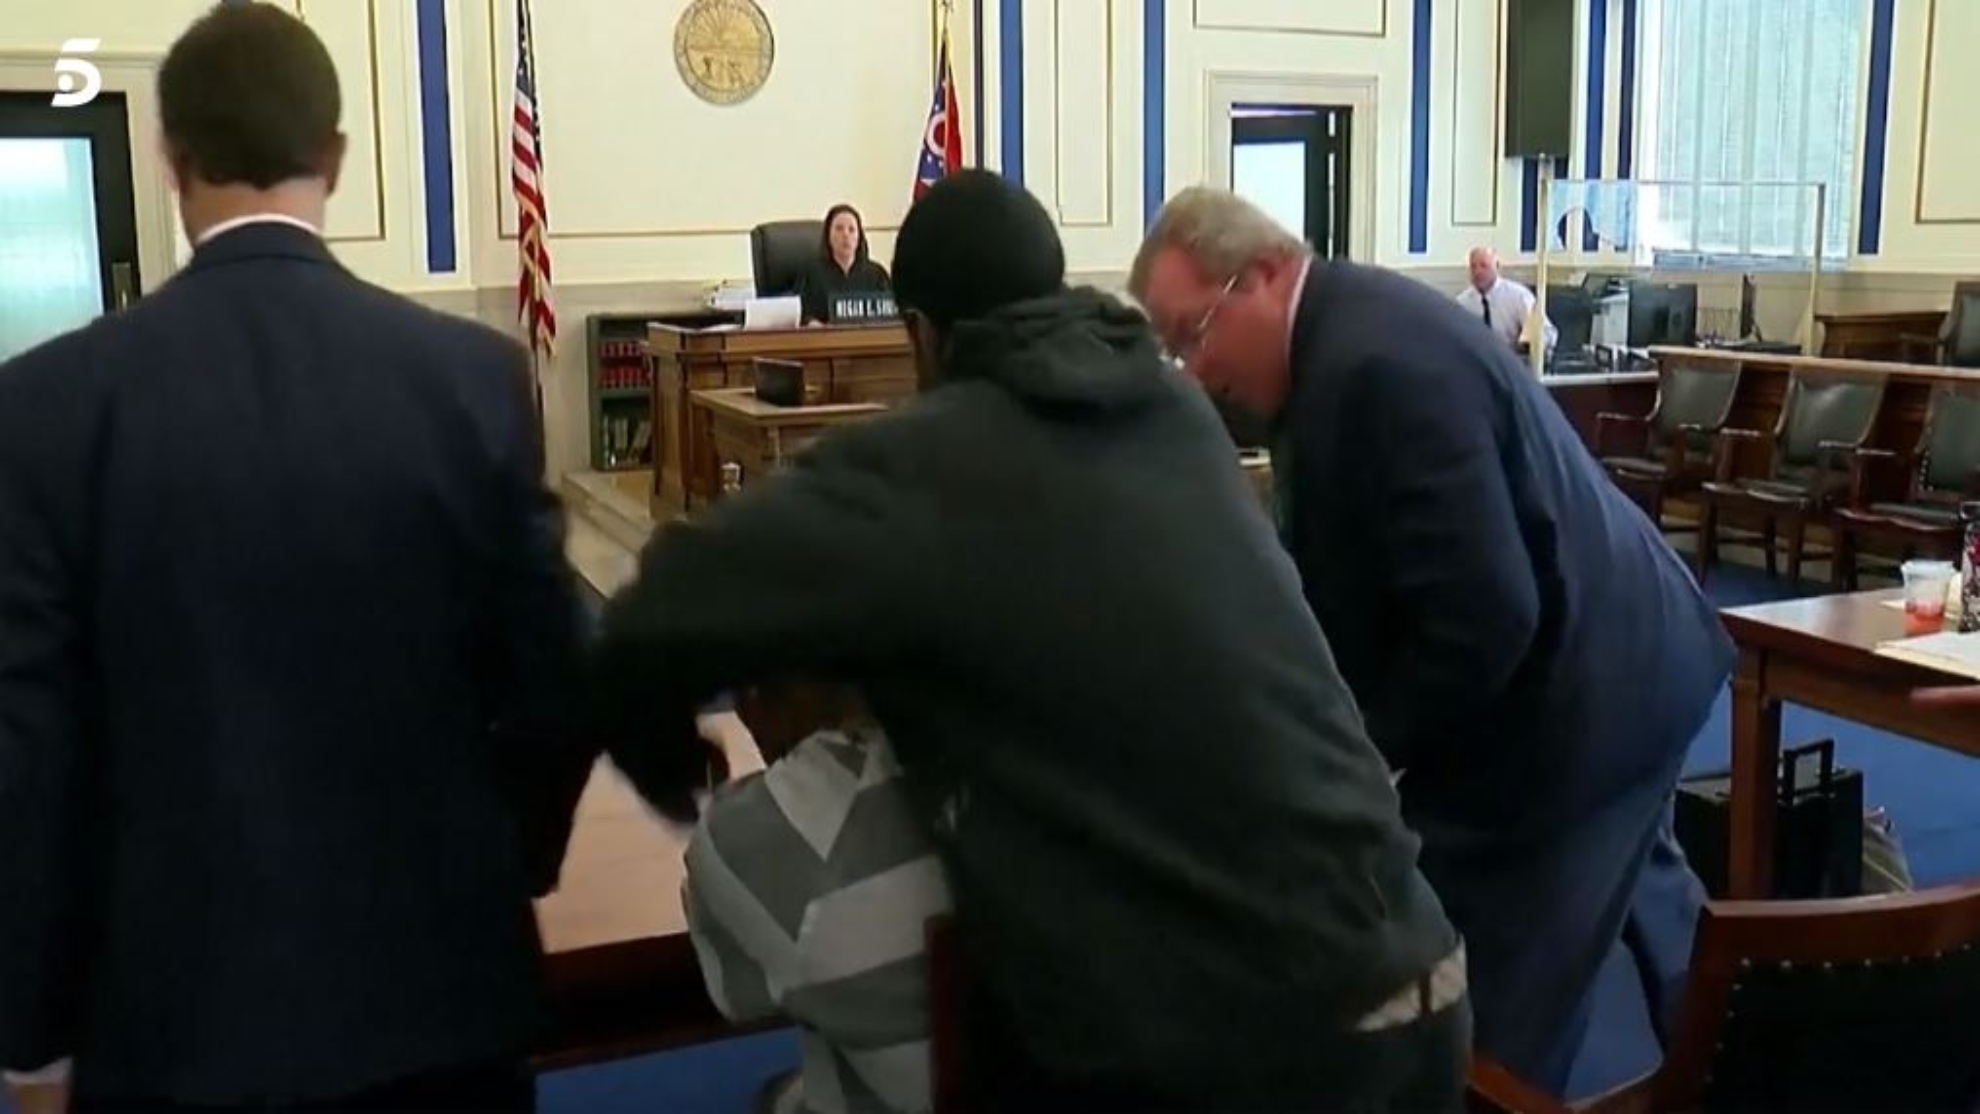 Padre golpea al asesino de su hijo durante juicio 